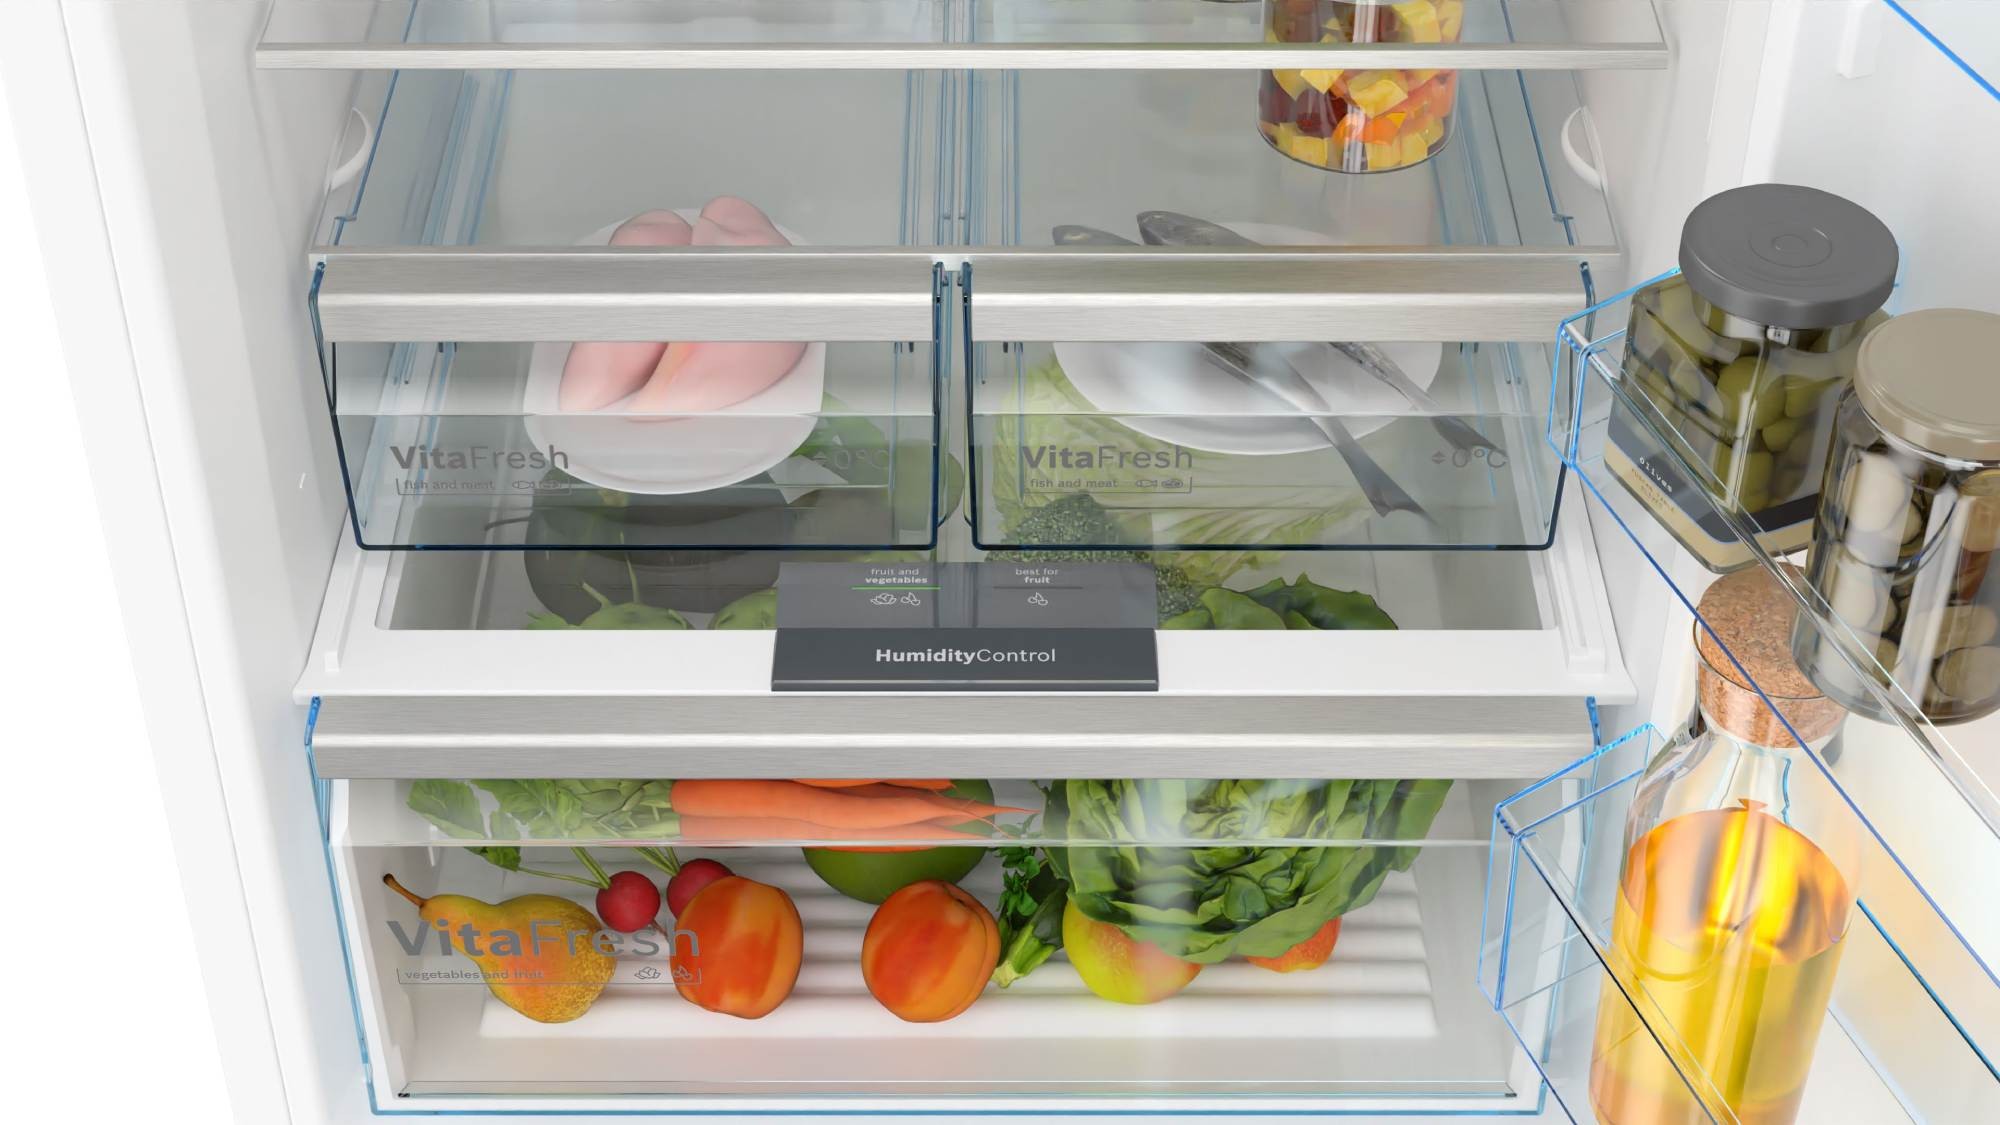 BOSCH Réfrigérateur congélateur bas Série 4 No Frost VitaFresh 400L Blanc - KGN56XWEA